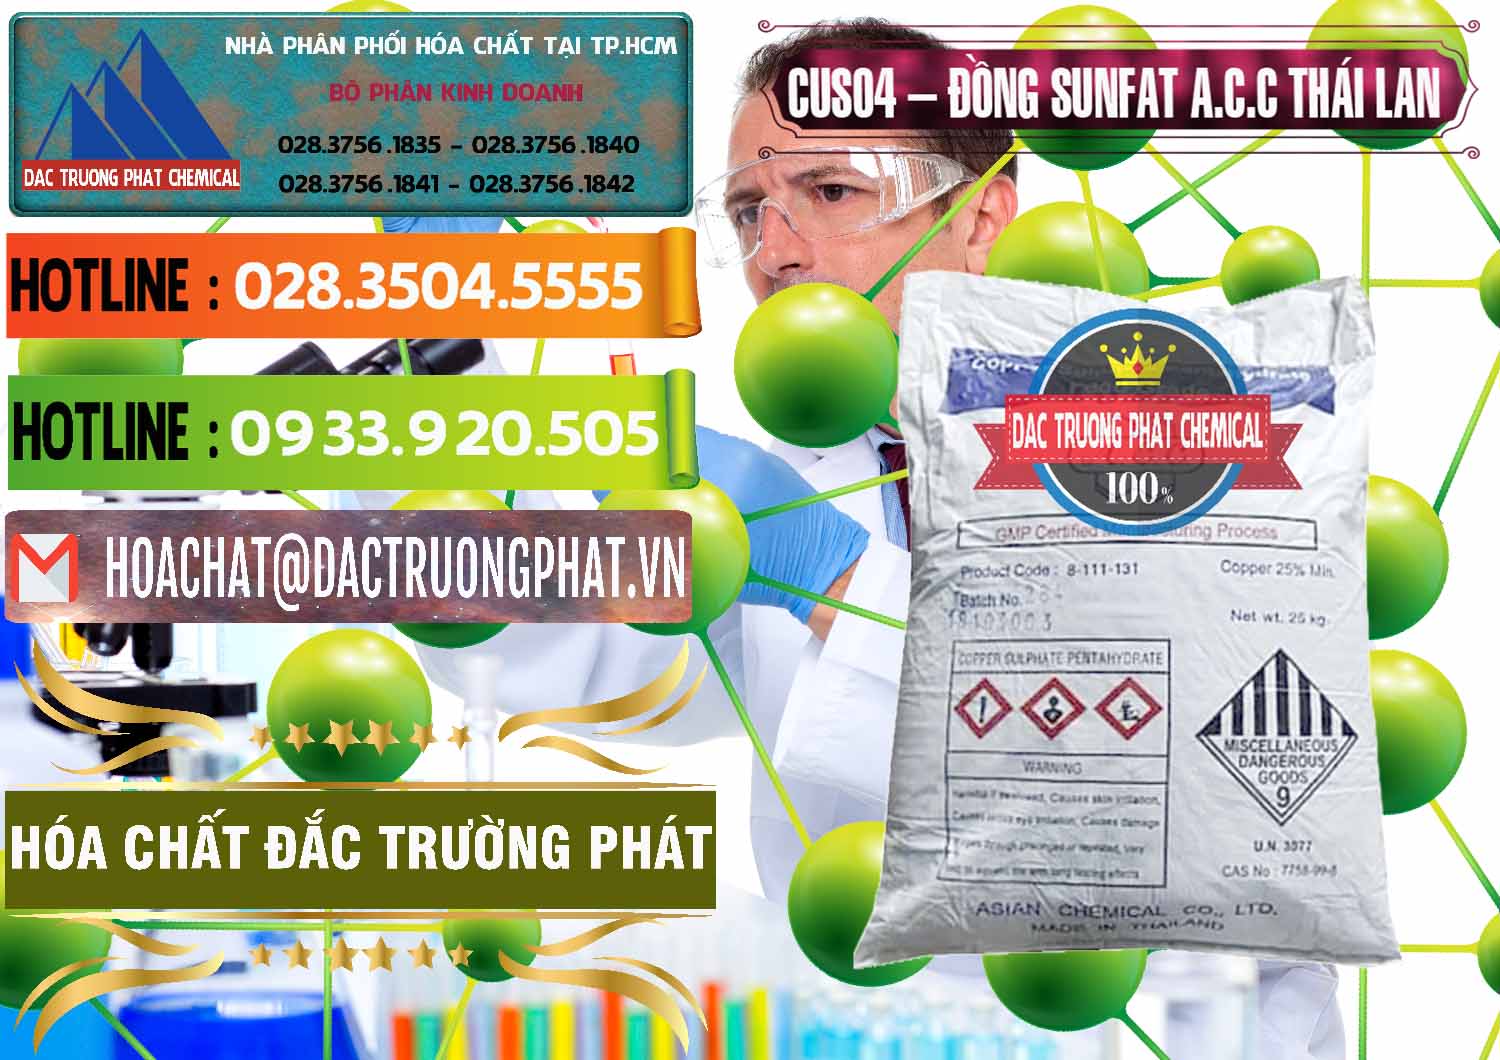 Công ty bán - phân phối CuSO4 – Đồng Sunfat A.C.C Thái Lan - 0249 - Nhà cung cấp và bán hóa chất tại TP.HCM - cungcaphoachat.com.vn